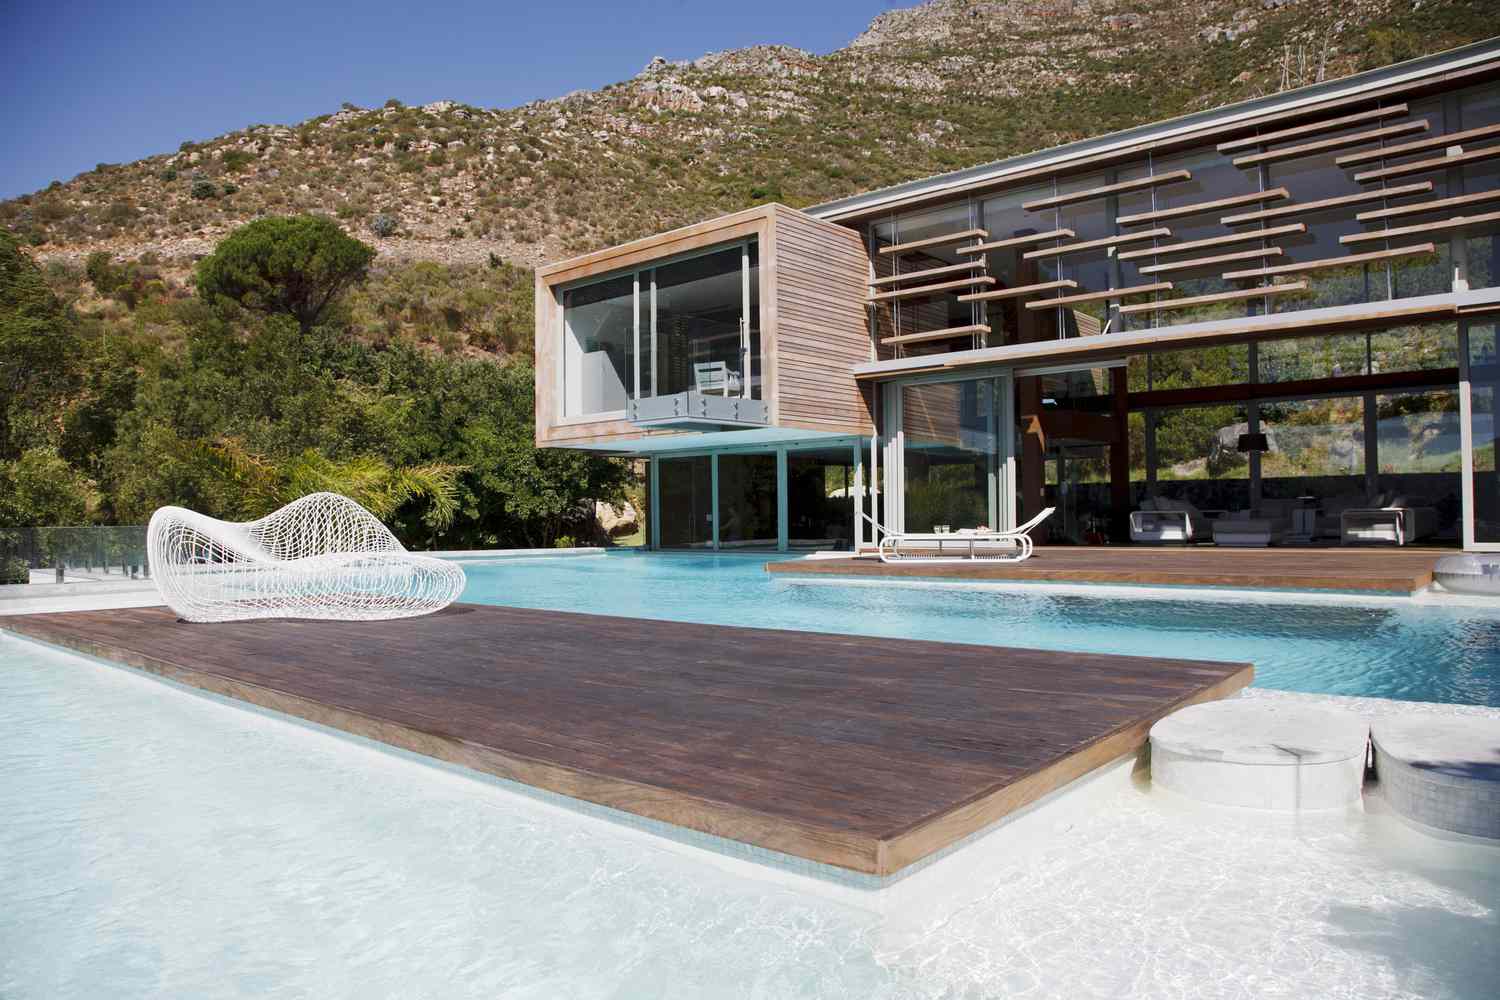 Ein moderner Swimmingpool mit modernem Haus in der Nähe der Berge.